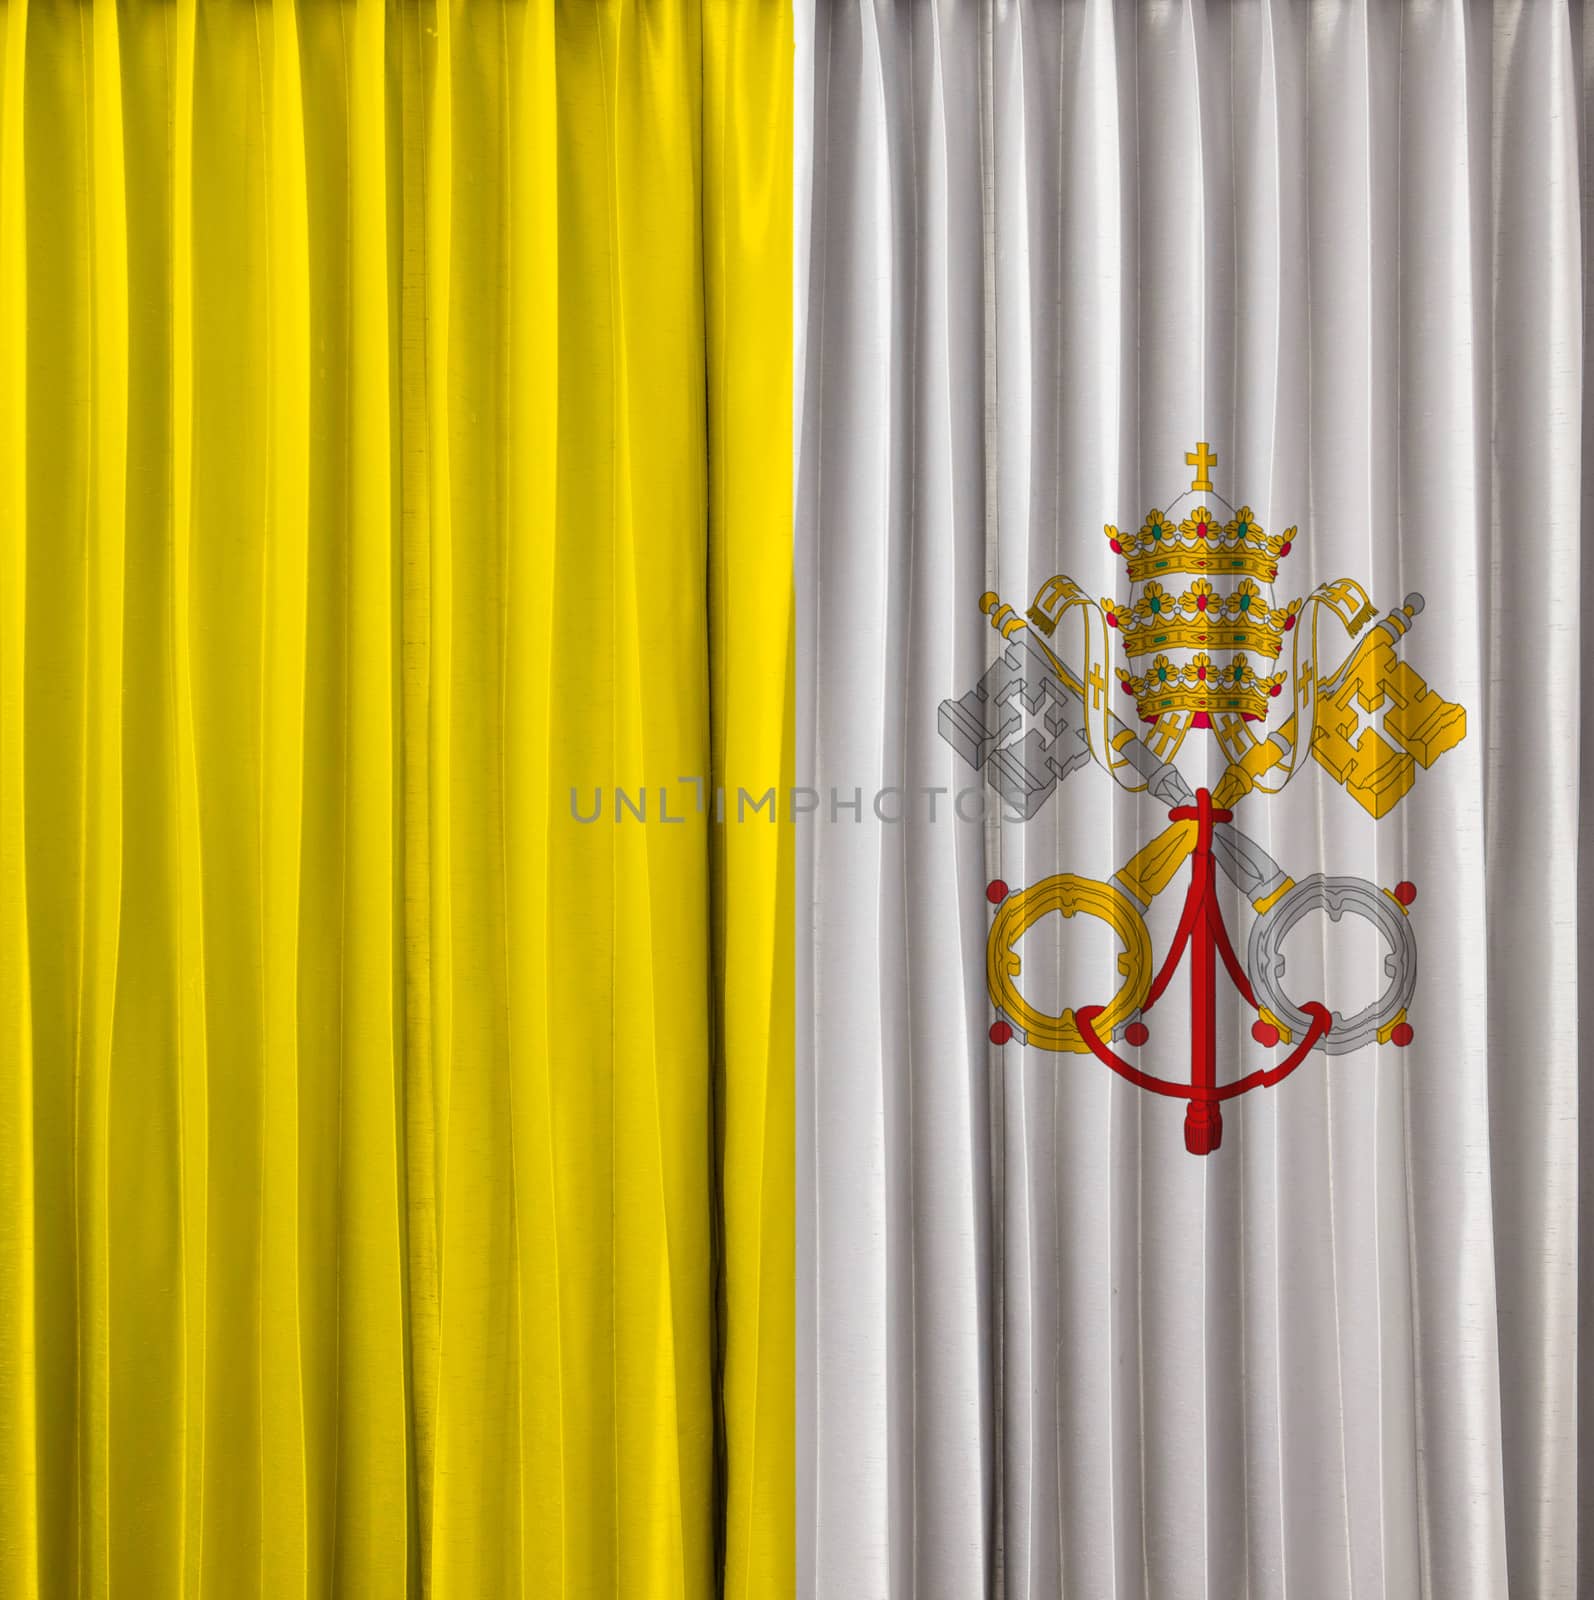 Vatican flag on curtain